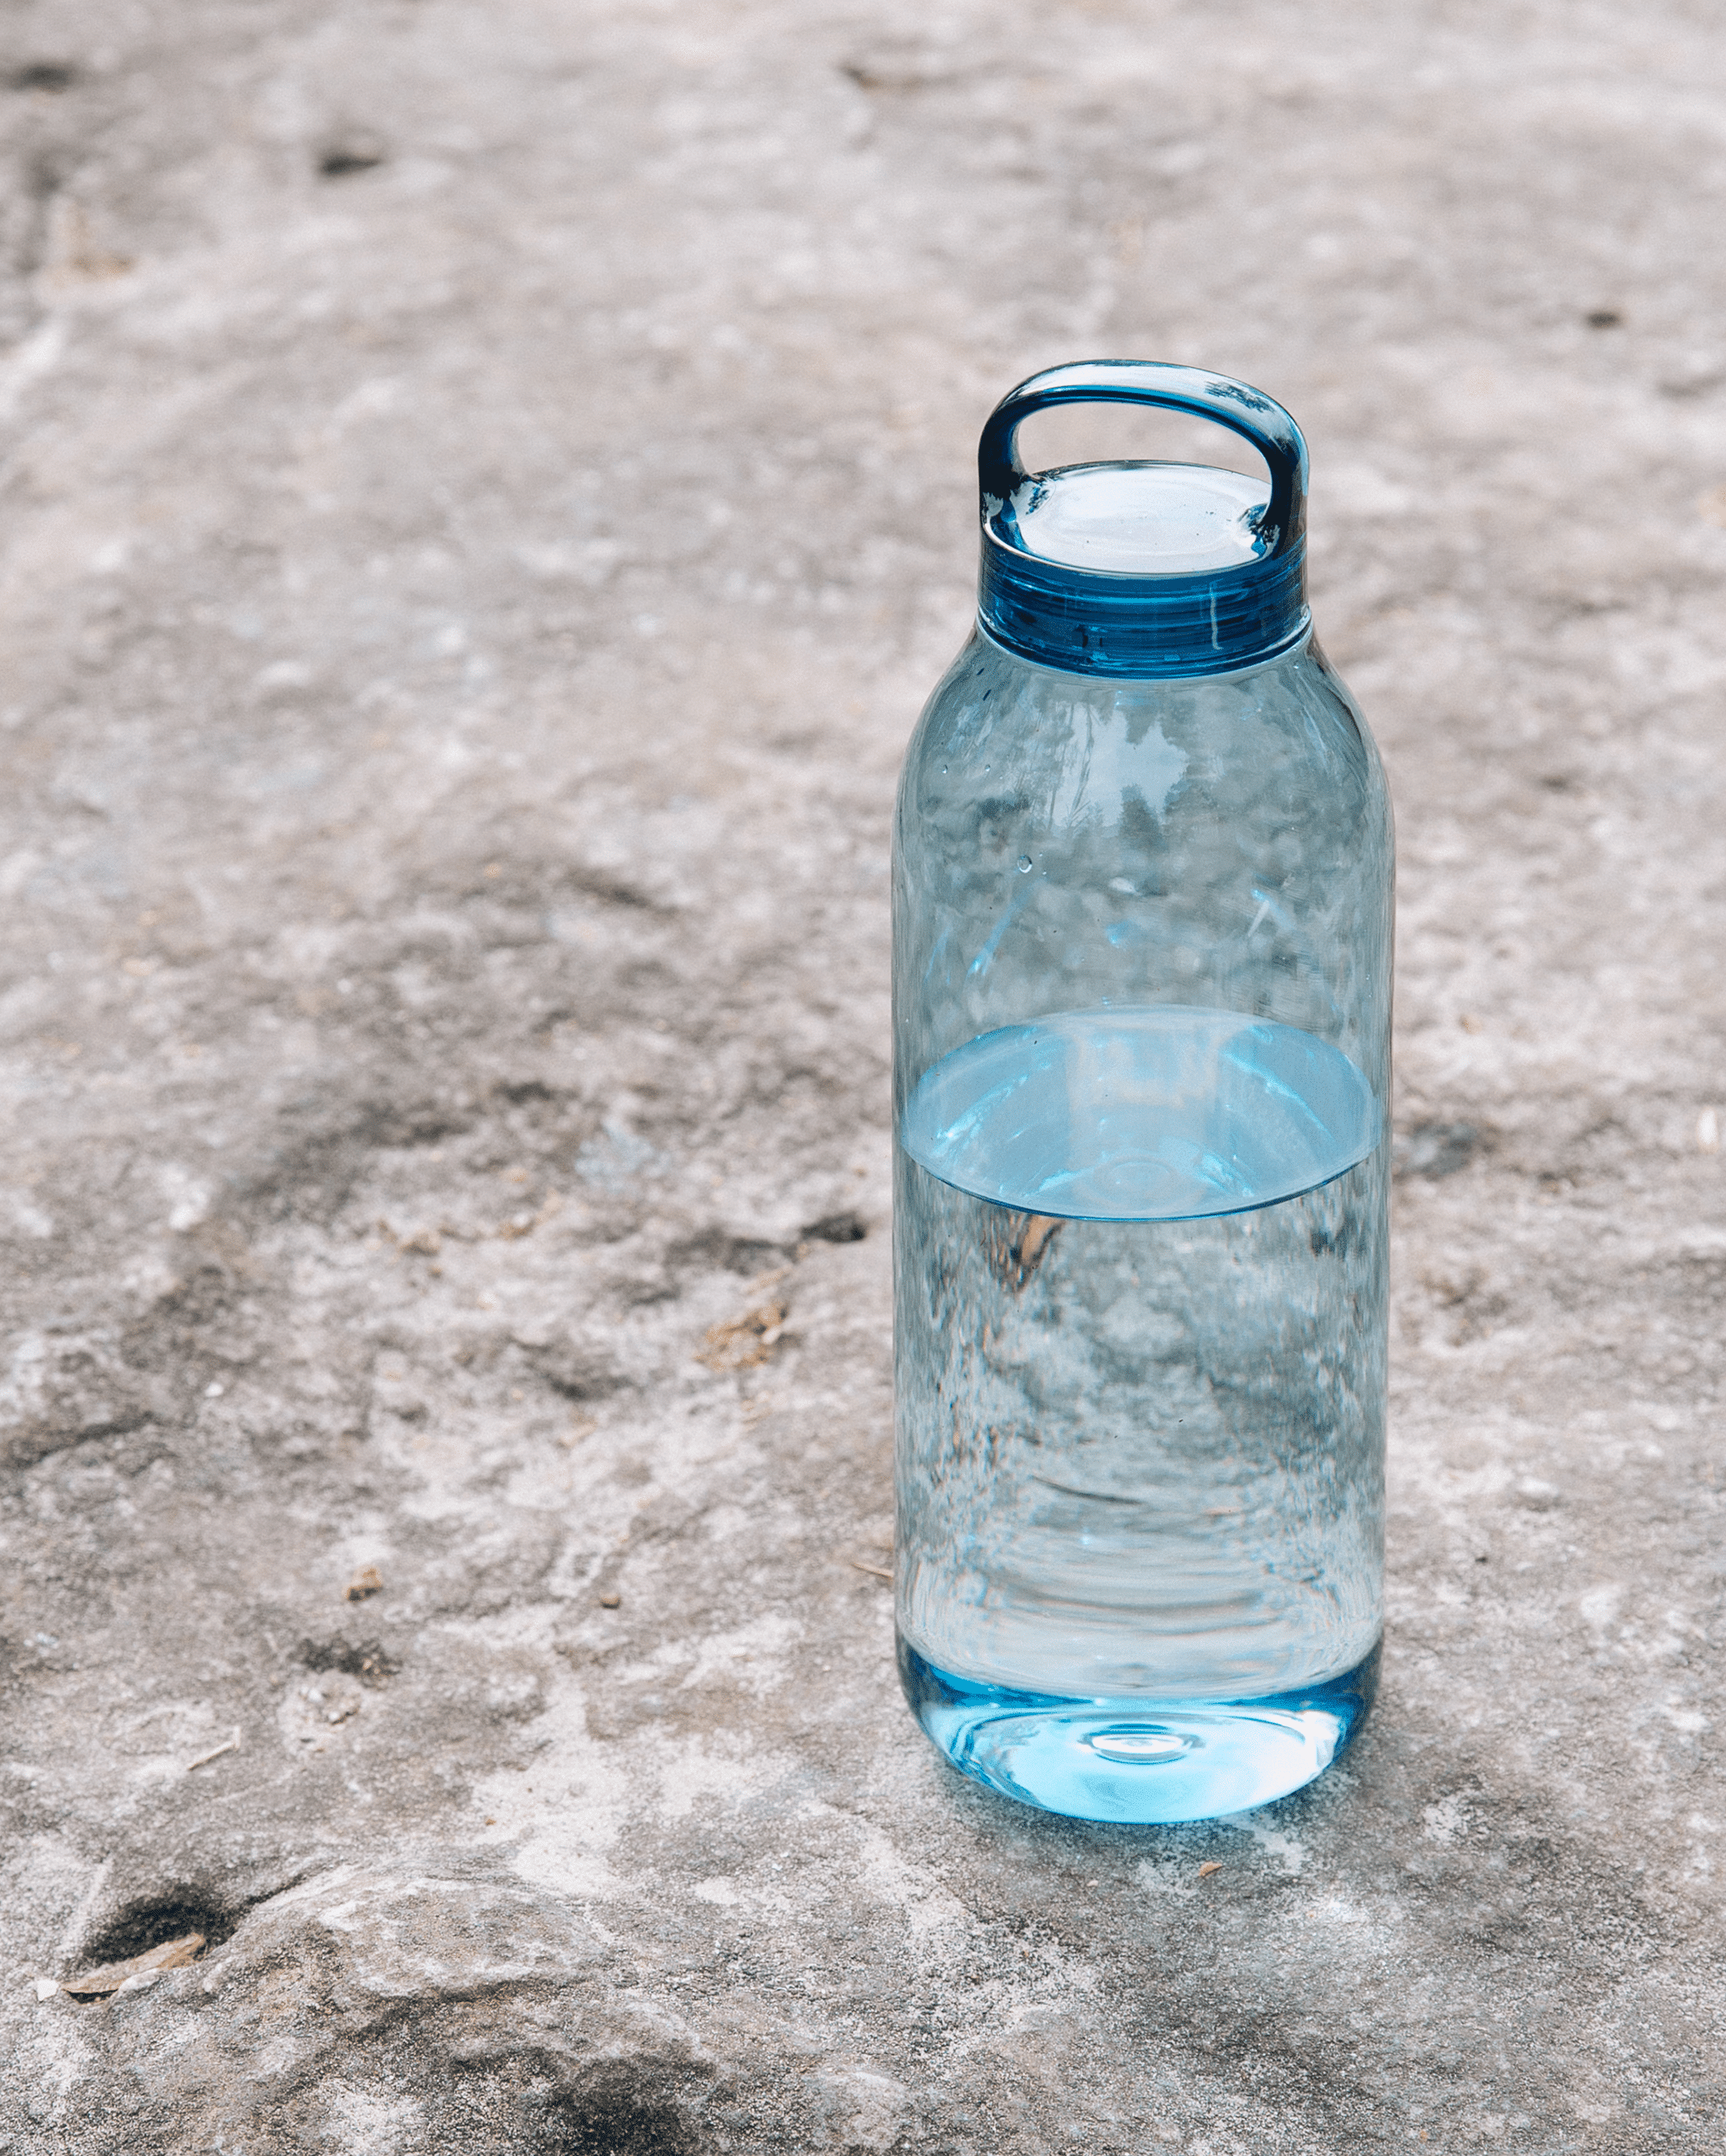 Kinto Water Bottle 950ml in Smoke